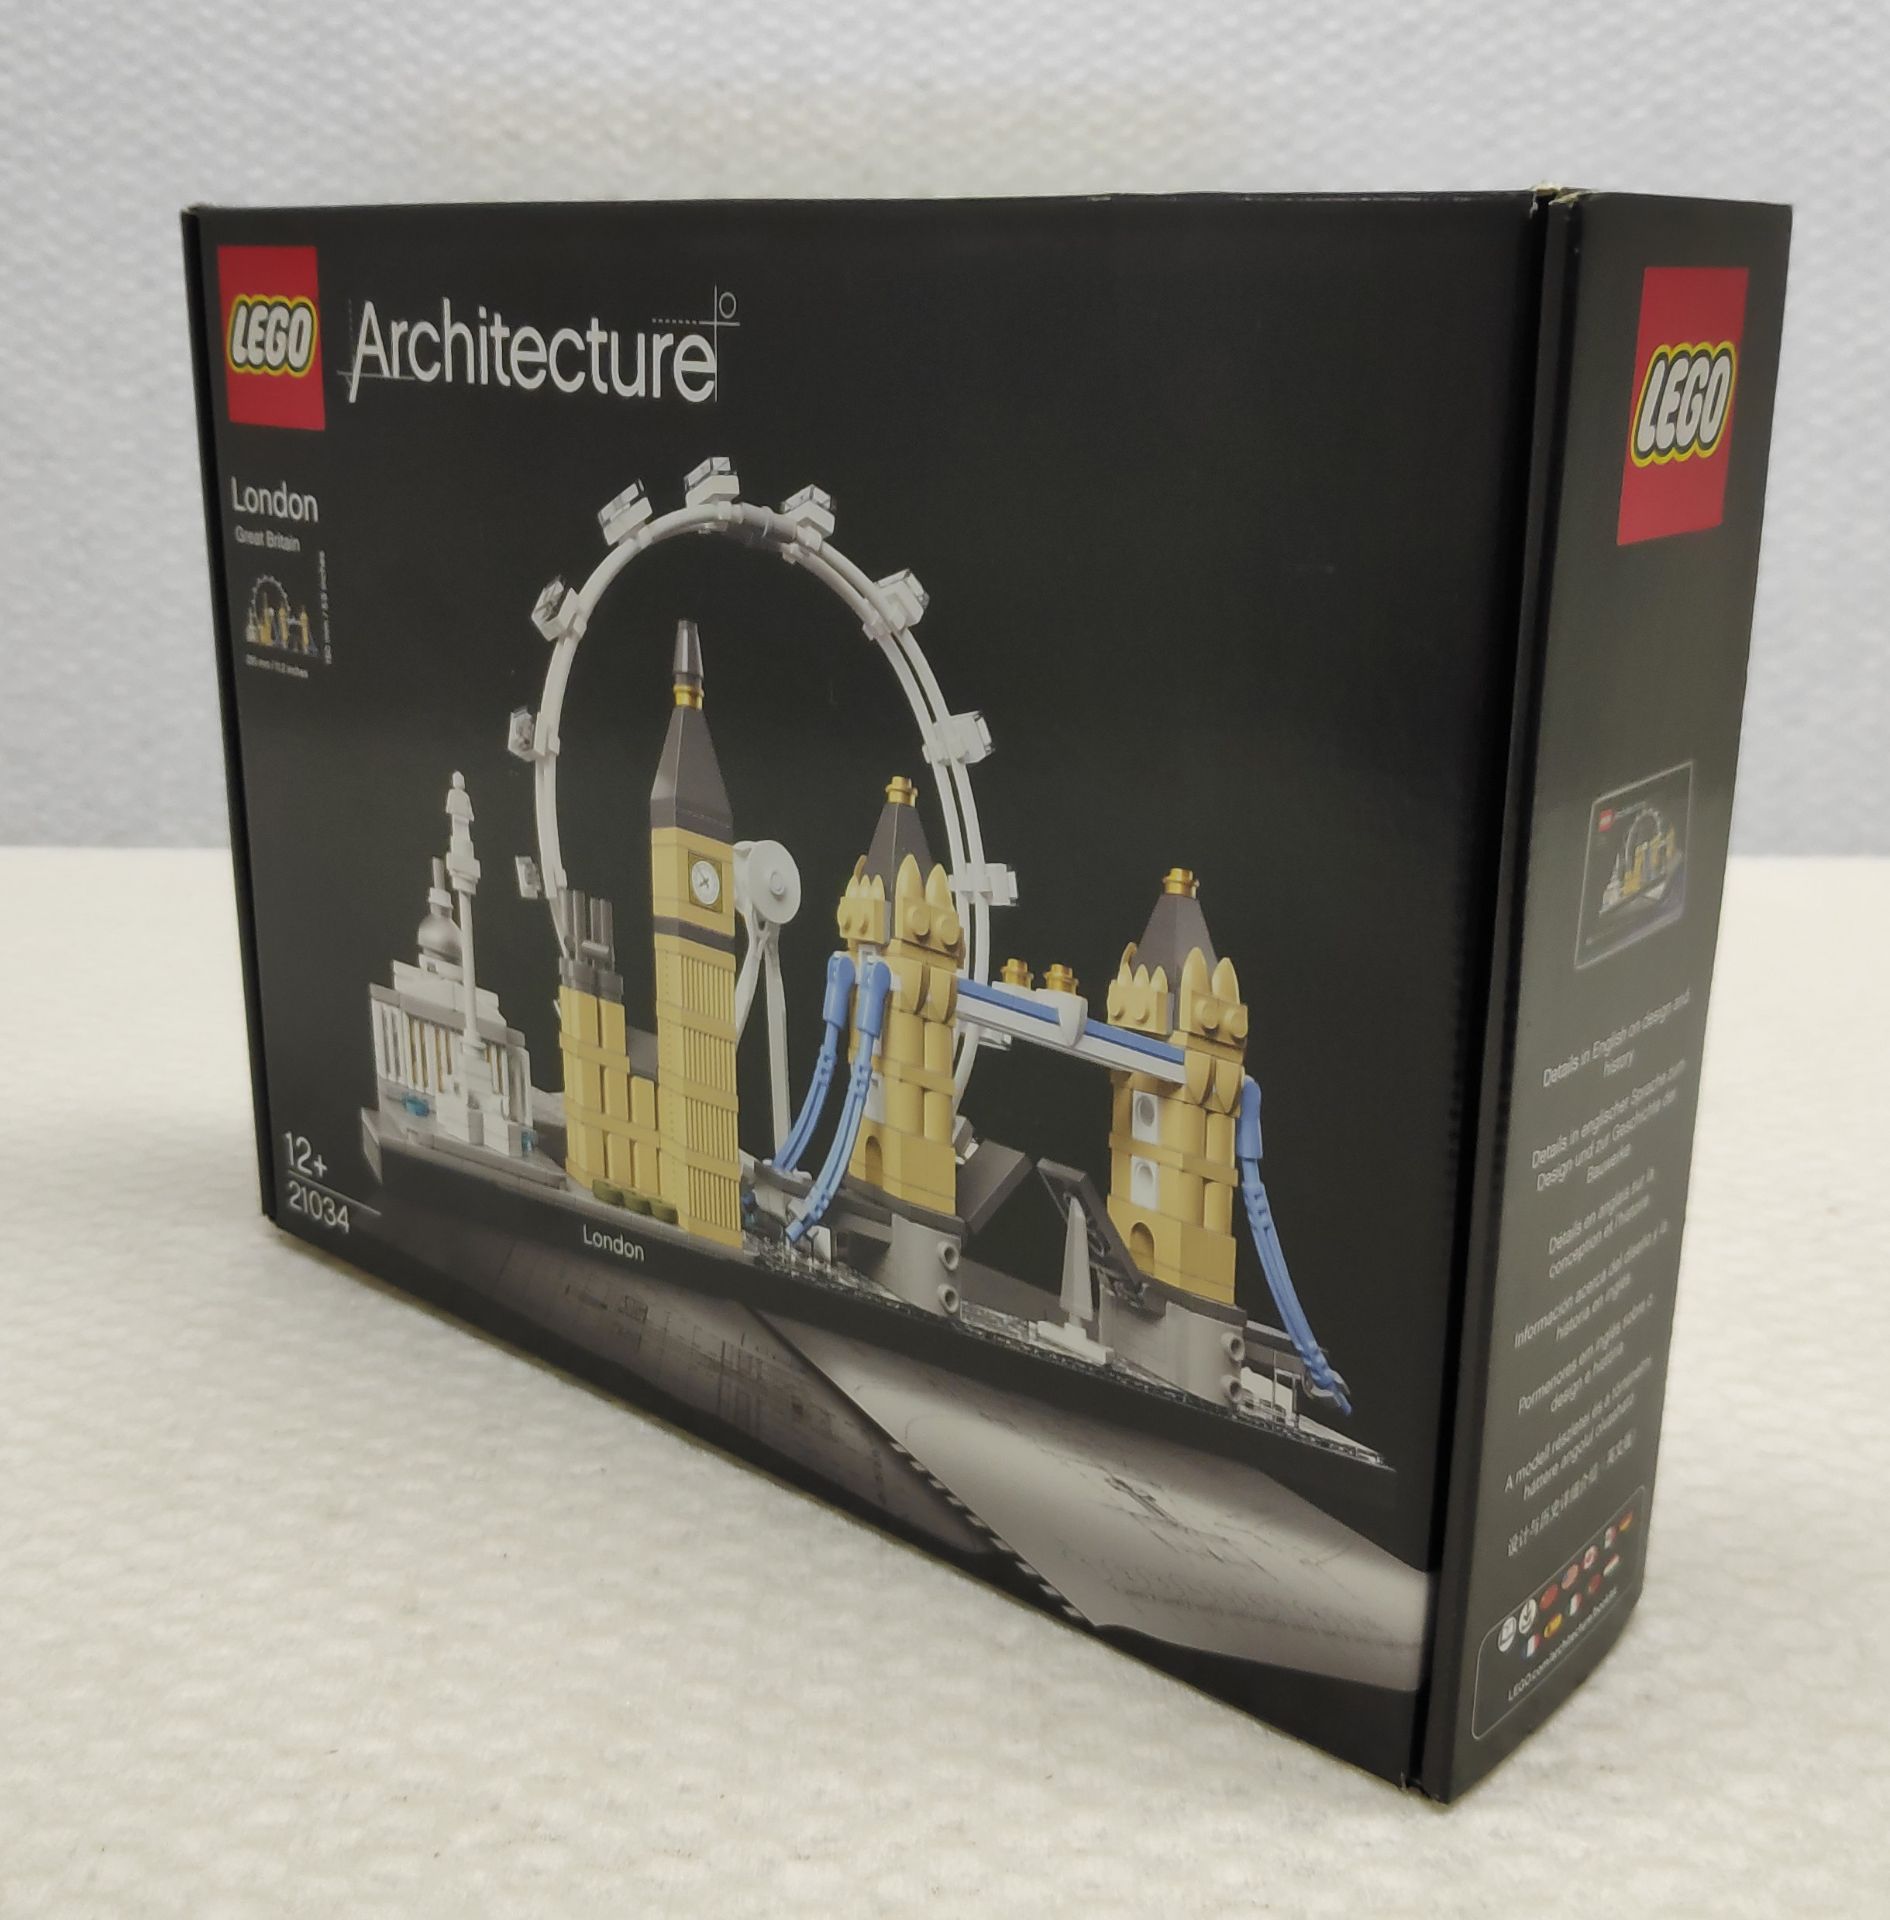 1 x Lego Architecture London Set - Set # 21034 - New/Boxed - Image 6 of 7